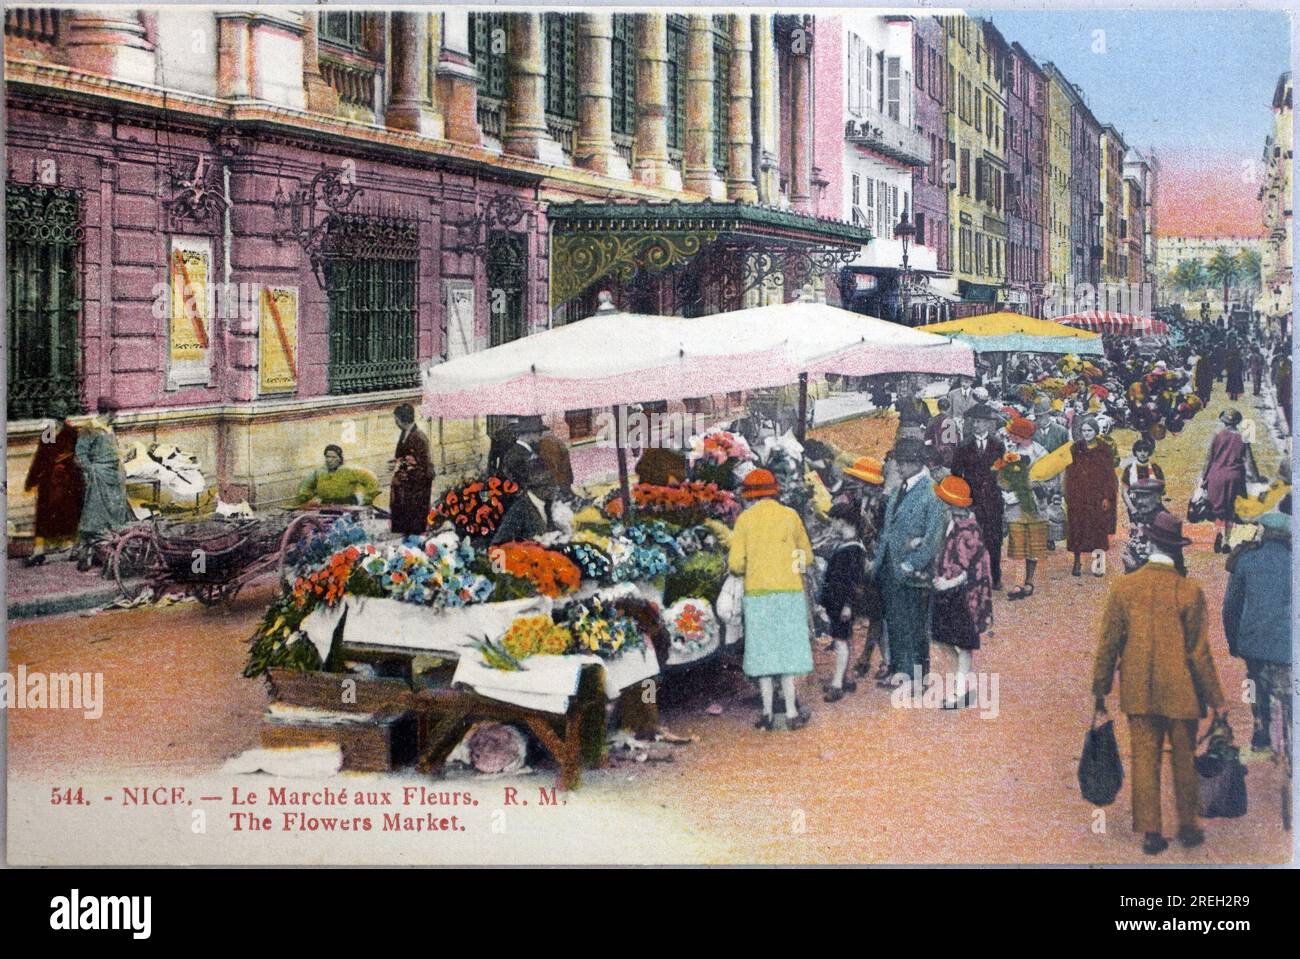 Nice, le marché aux fleurs. Carte postale ancienne photographie, colorizee debut 20e siecle. Banque D'Images